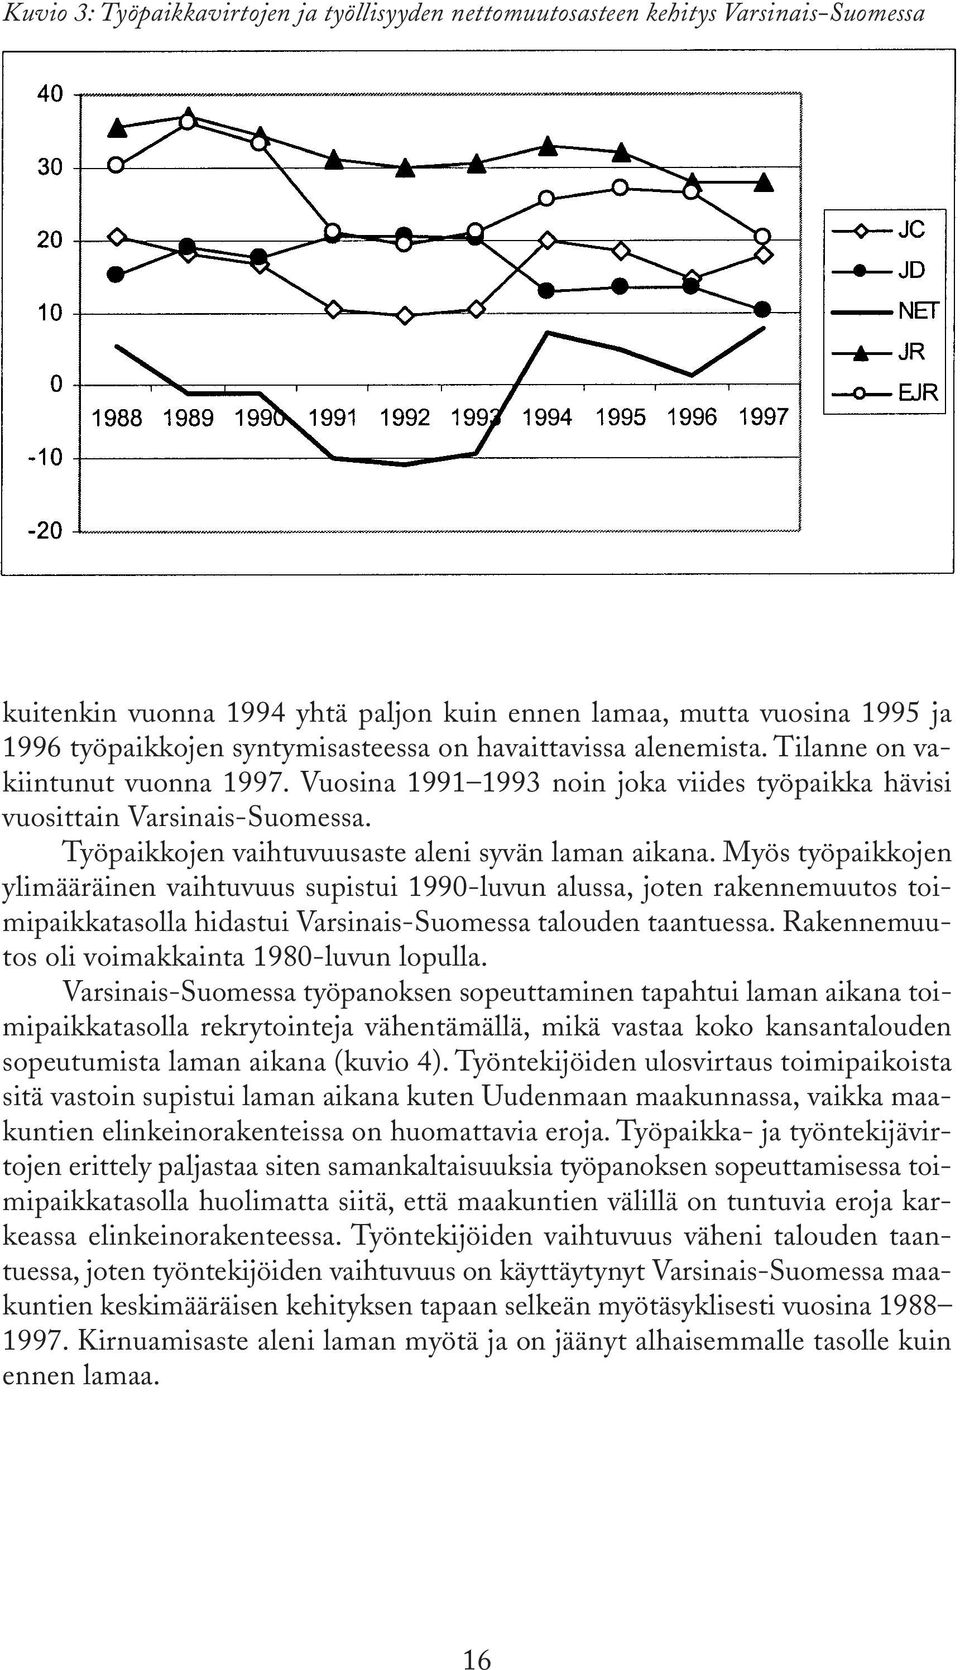 Myös työpaikkojen ylimääräinen vaihtuvuus supistui 1990-luvun alussa, joten rakennemuutos toimipaikkatasolla hidastui Varsinais-Suomessa talouden taantuessa.